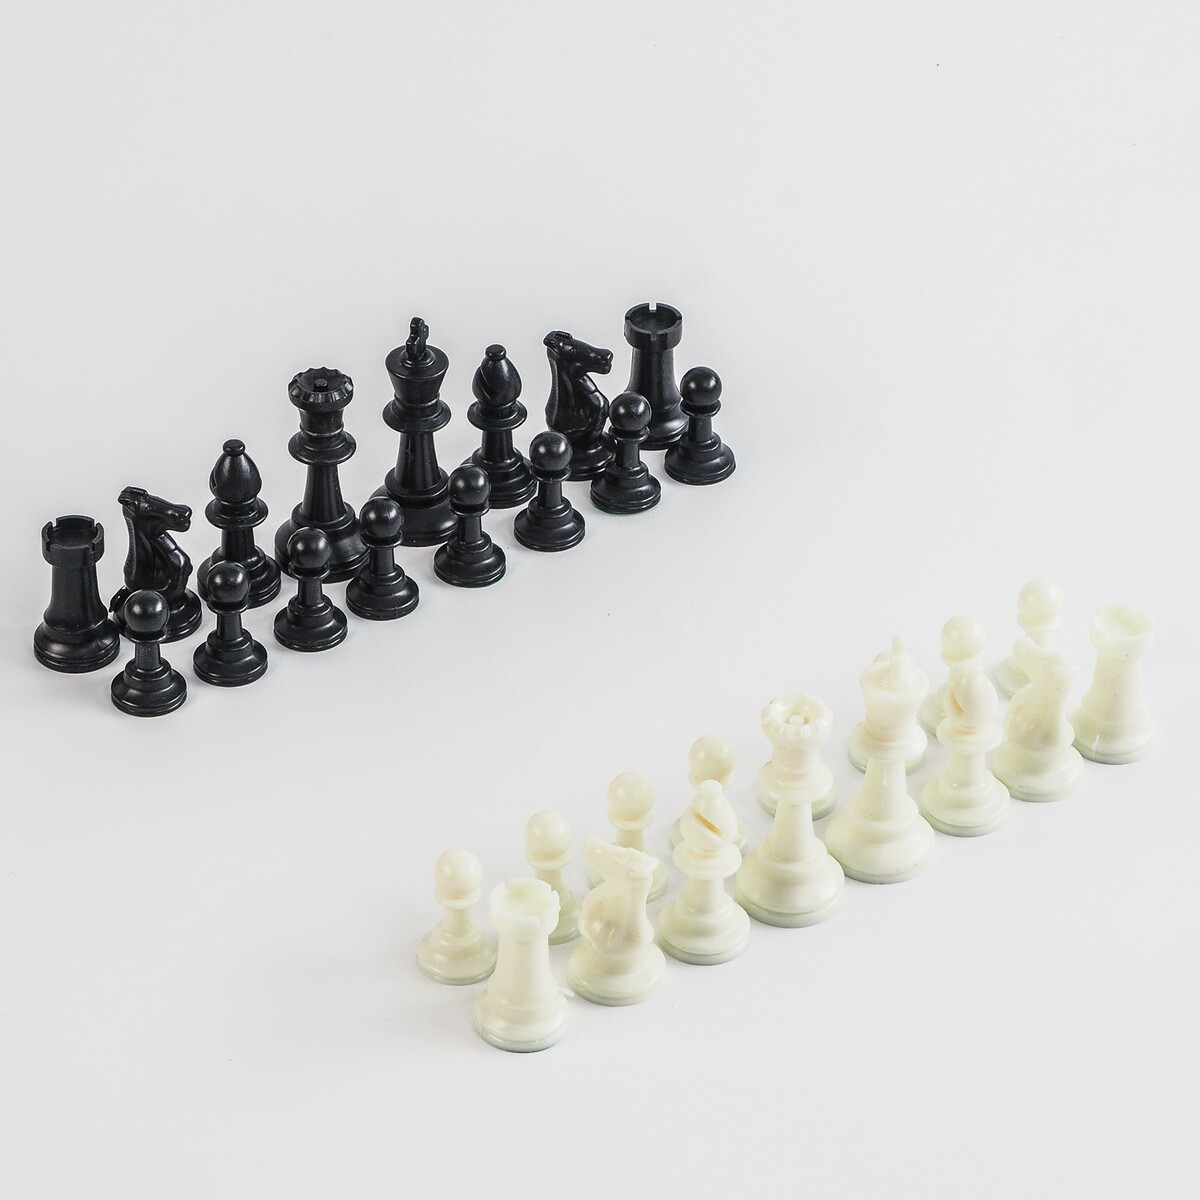 Шахматные фигуры, пластик, король h-7.5 см, пешка h-3.5 см титановый король